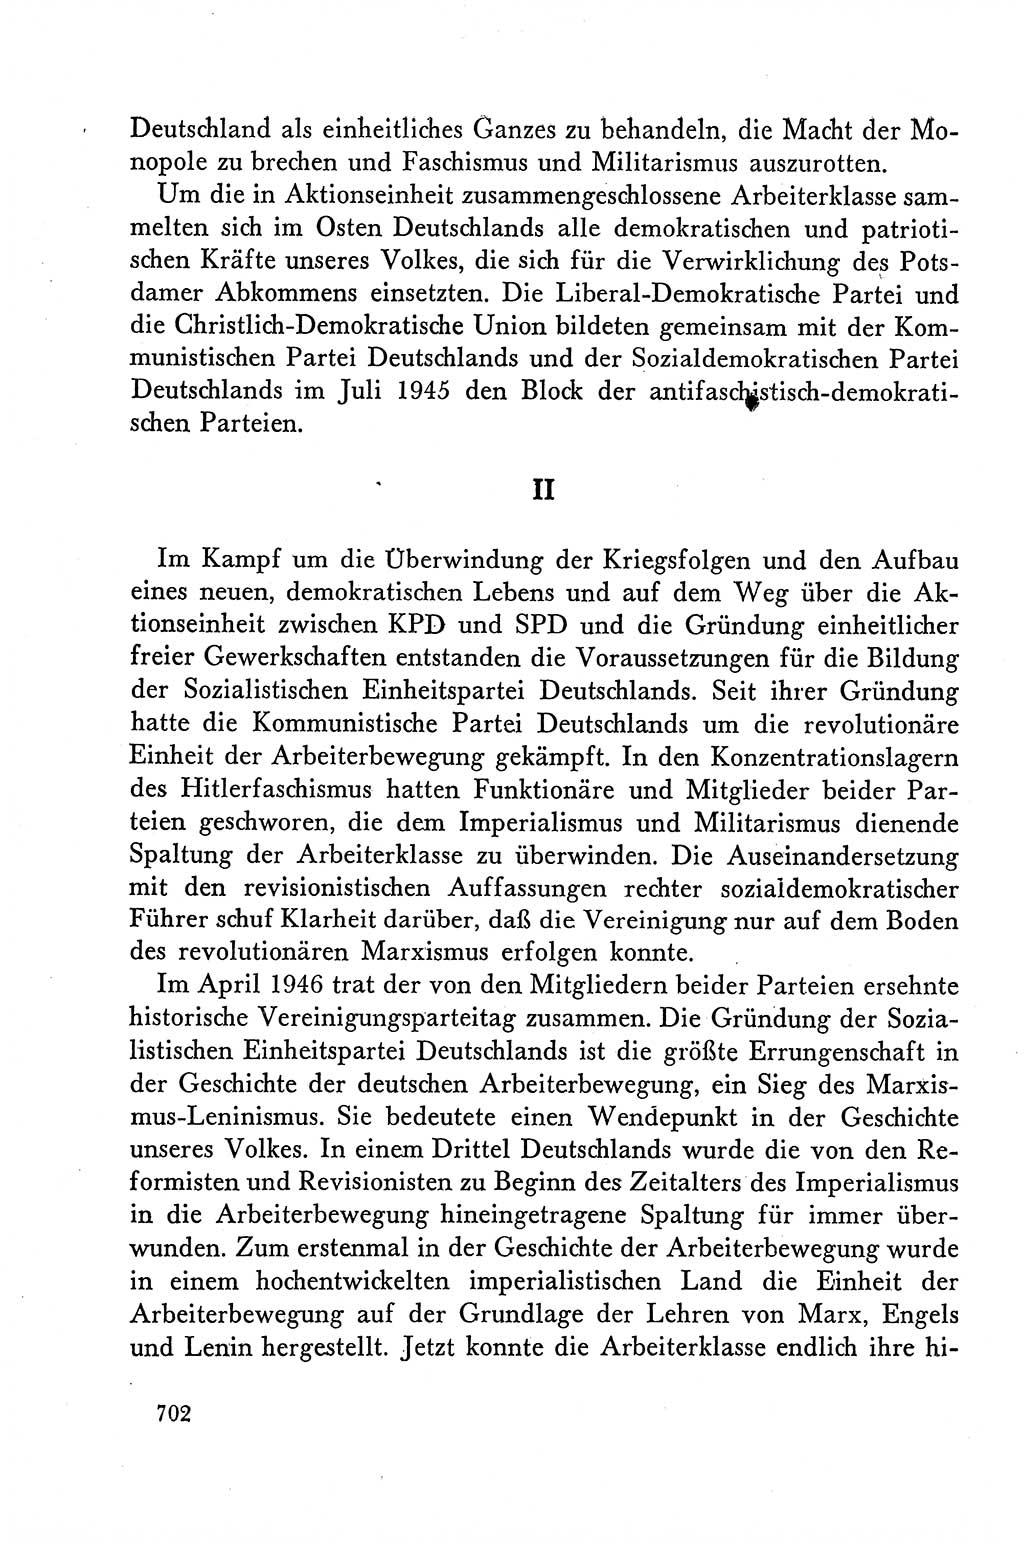 Dokumente der Sozialistischen Einheitspartei Deutschlands (SED) [Deutsche Demokratische Republik (DDR)] 1958-1959, Seite 702 (Dok. SED DDR 1958-1959, S. 702)